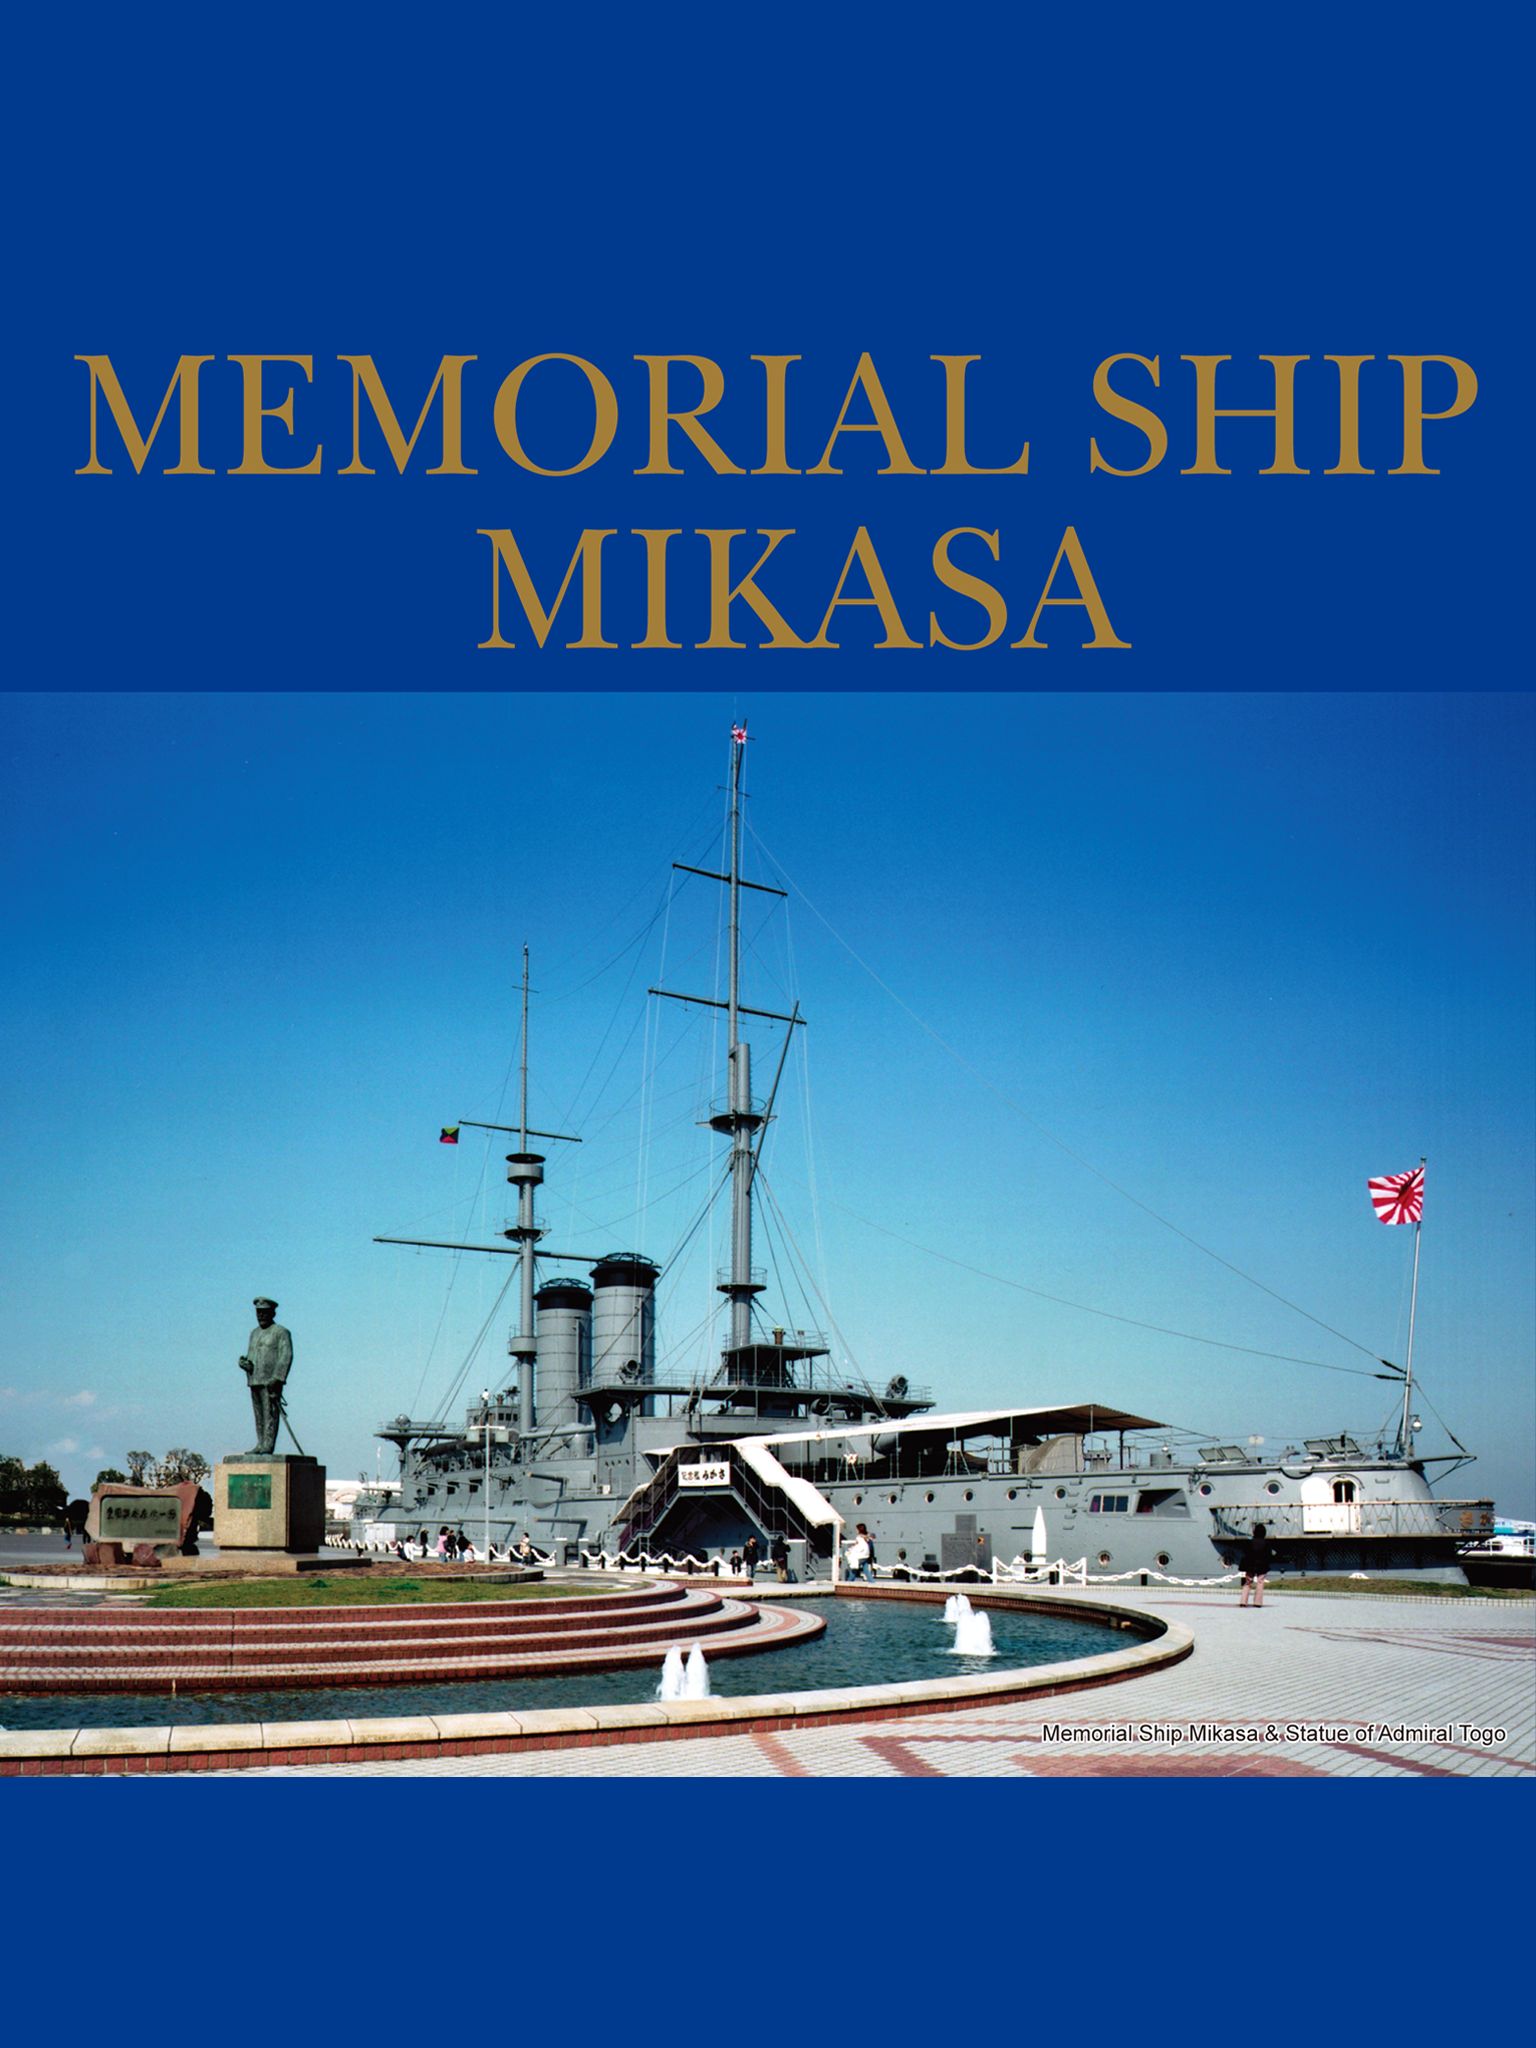 MEMORIAL SHIP MIKASA